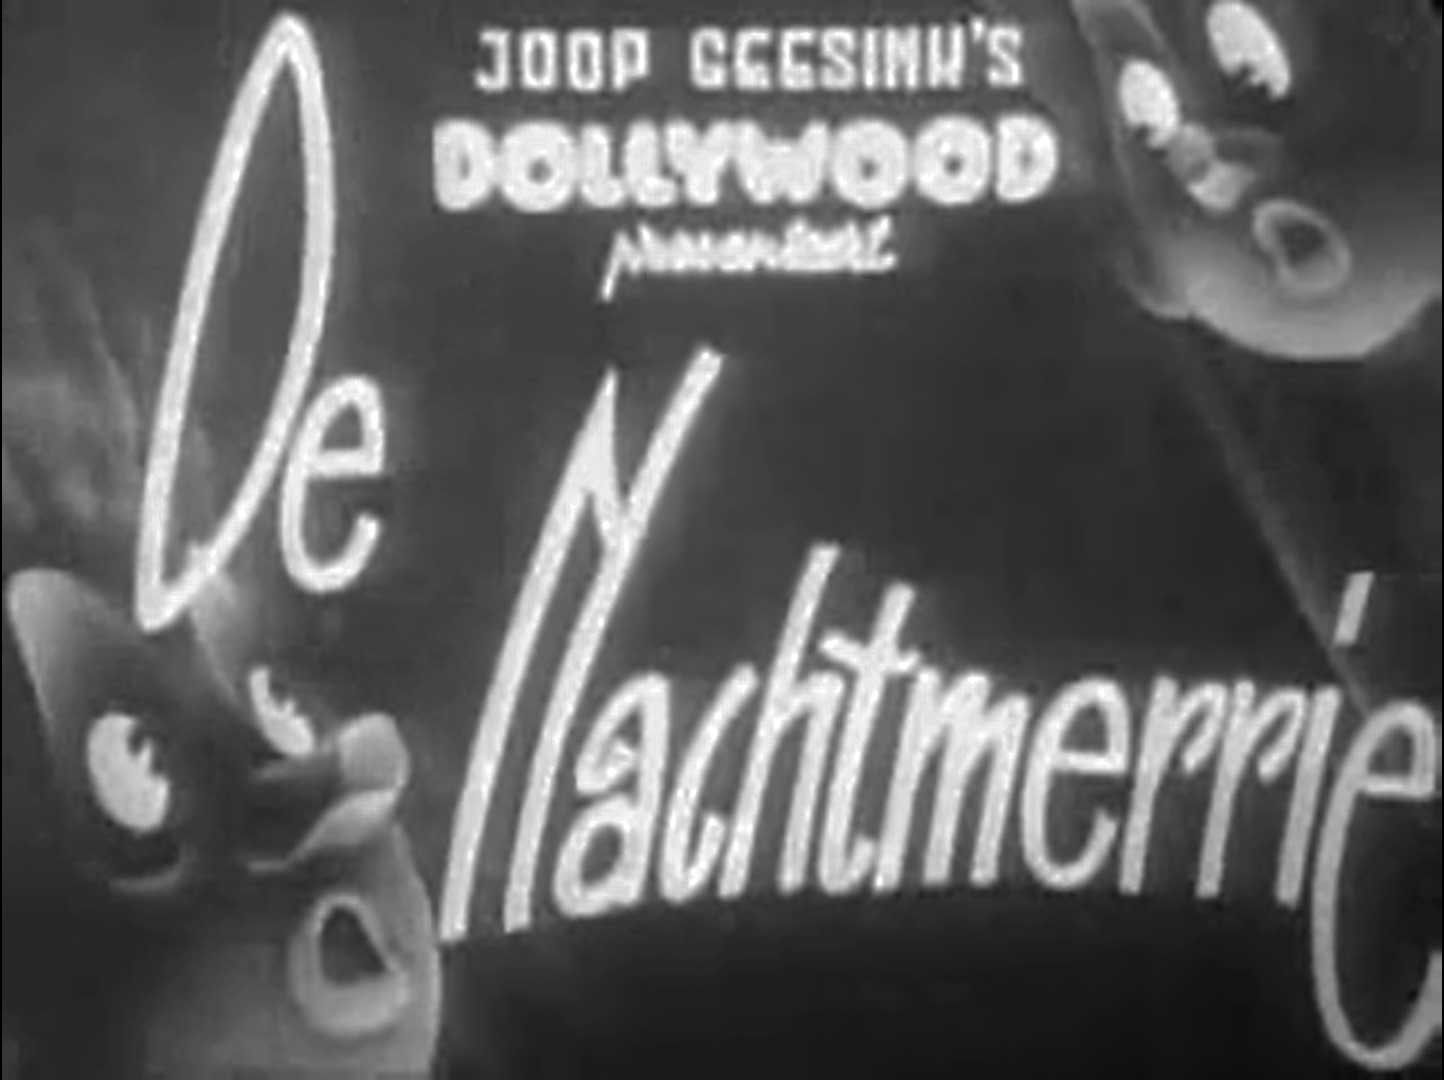 De nachtmerrie (1953)